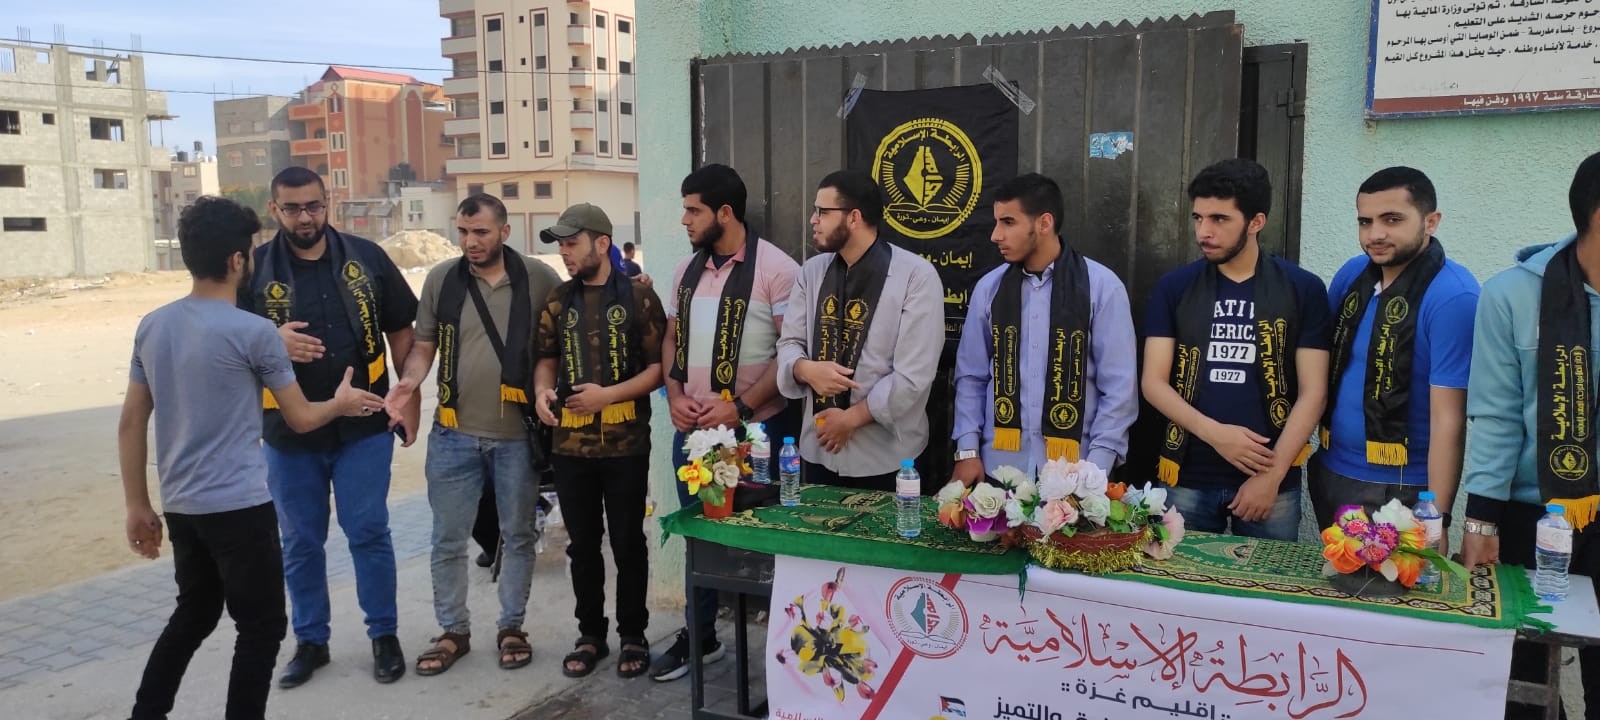 الرابطة الاسلامية بغزة تستقبل طلبة الثانوية العامة  (3).jpg